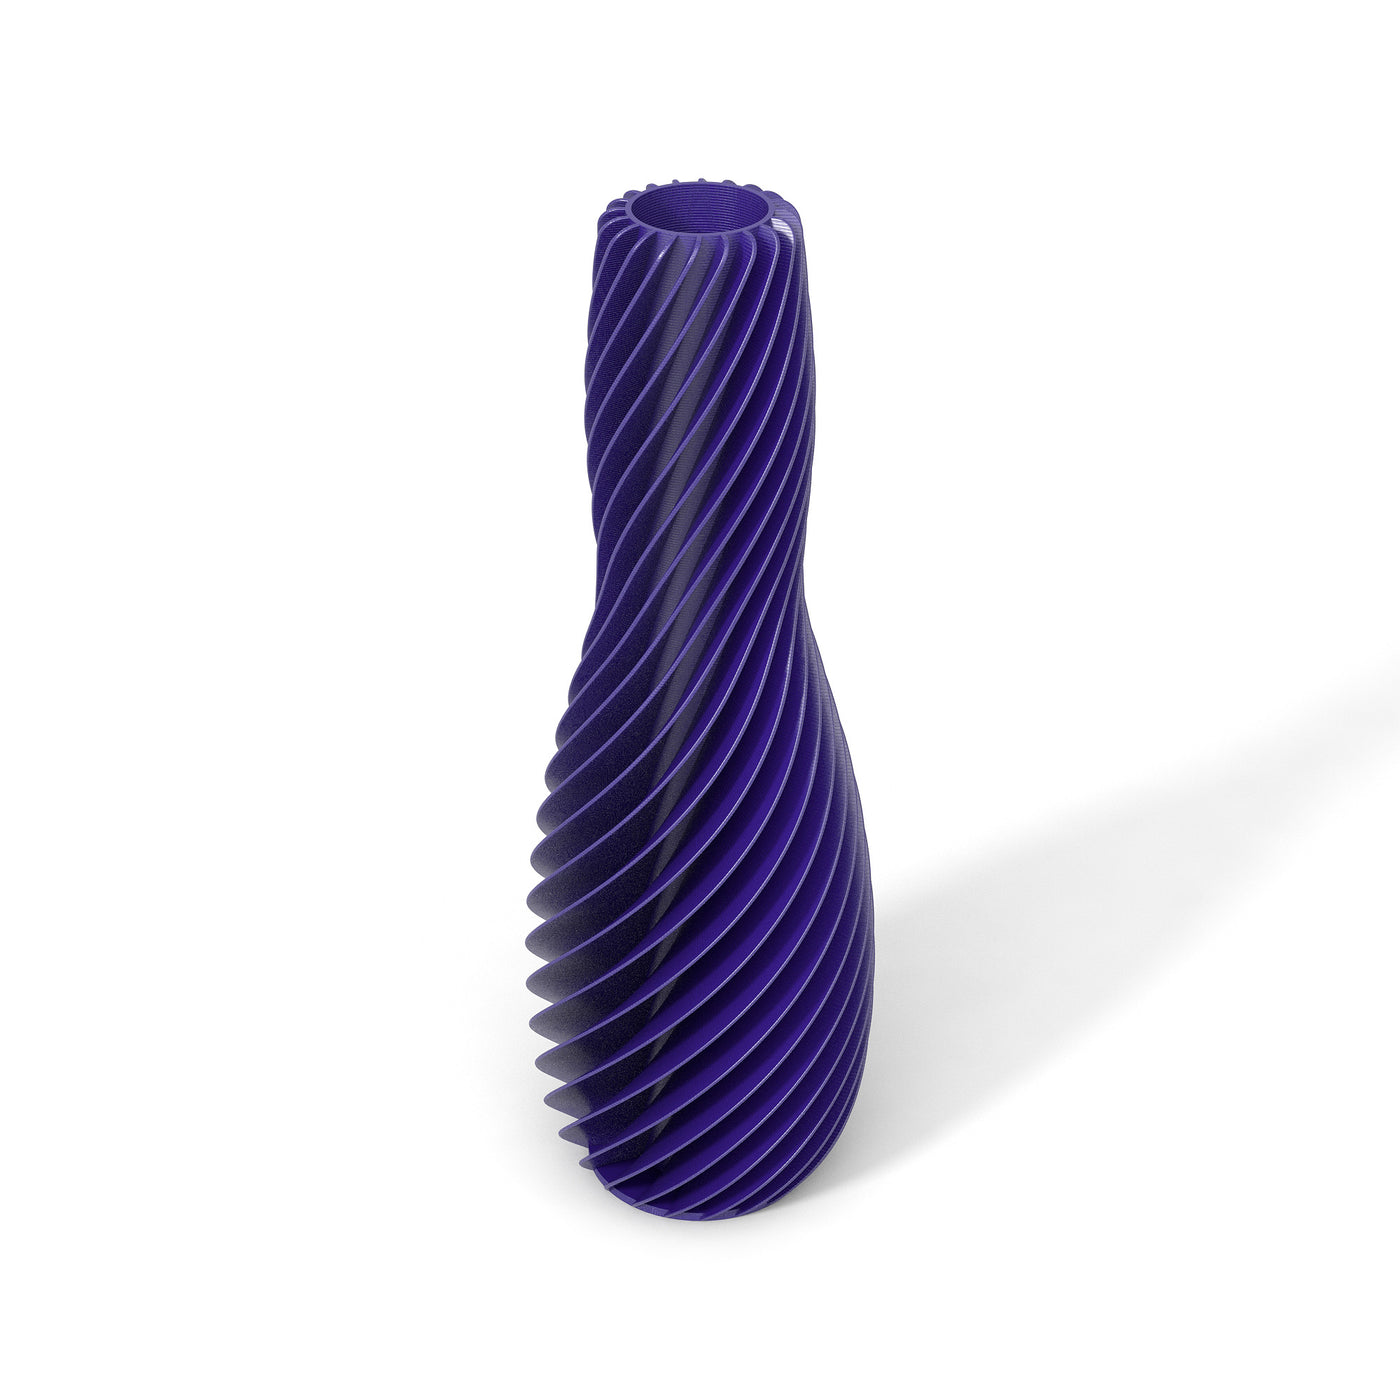 Fialová designová váza 3D print SPIRAL 4